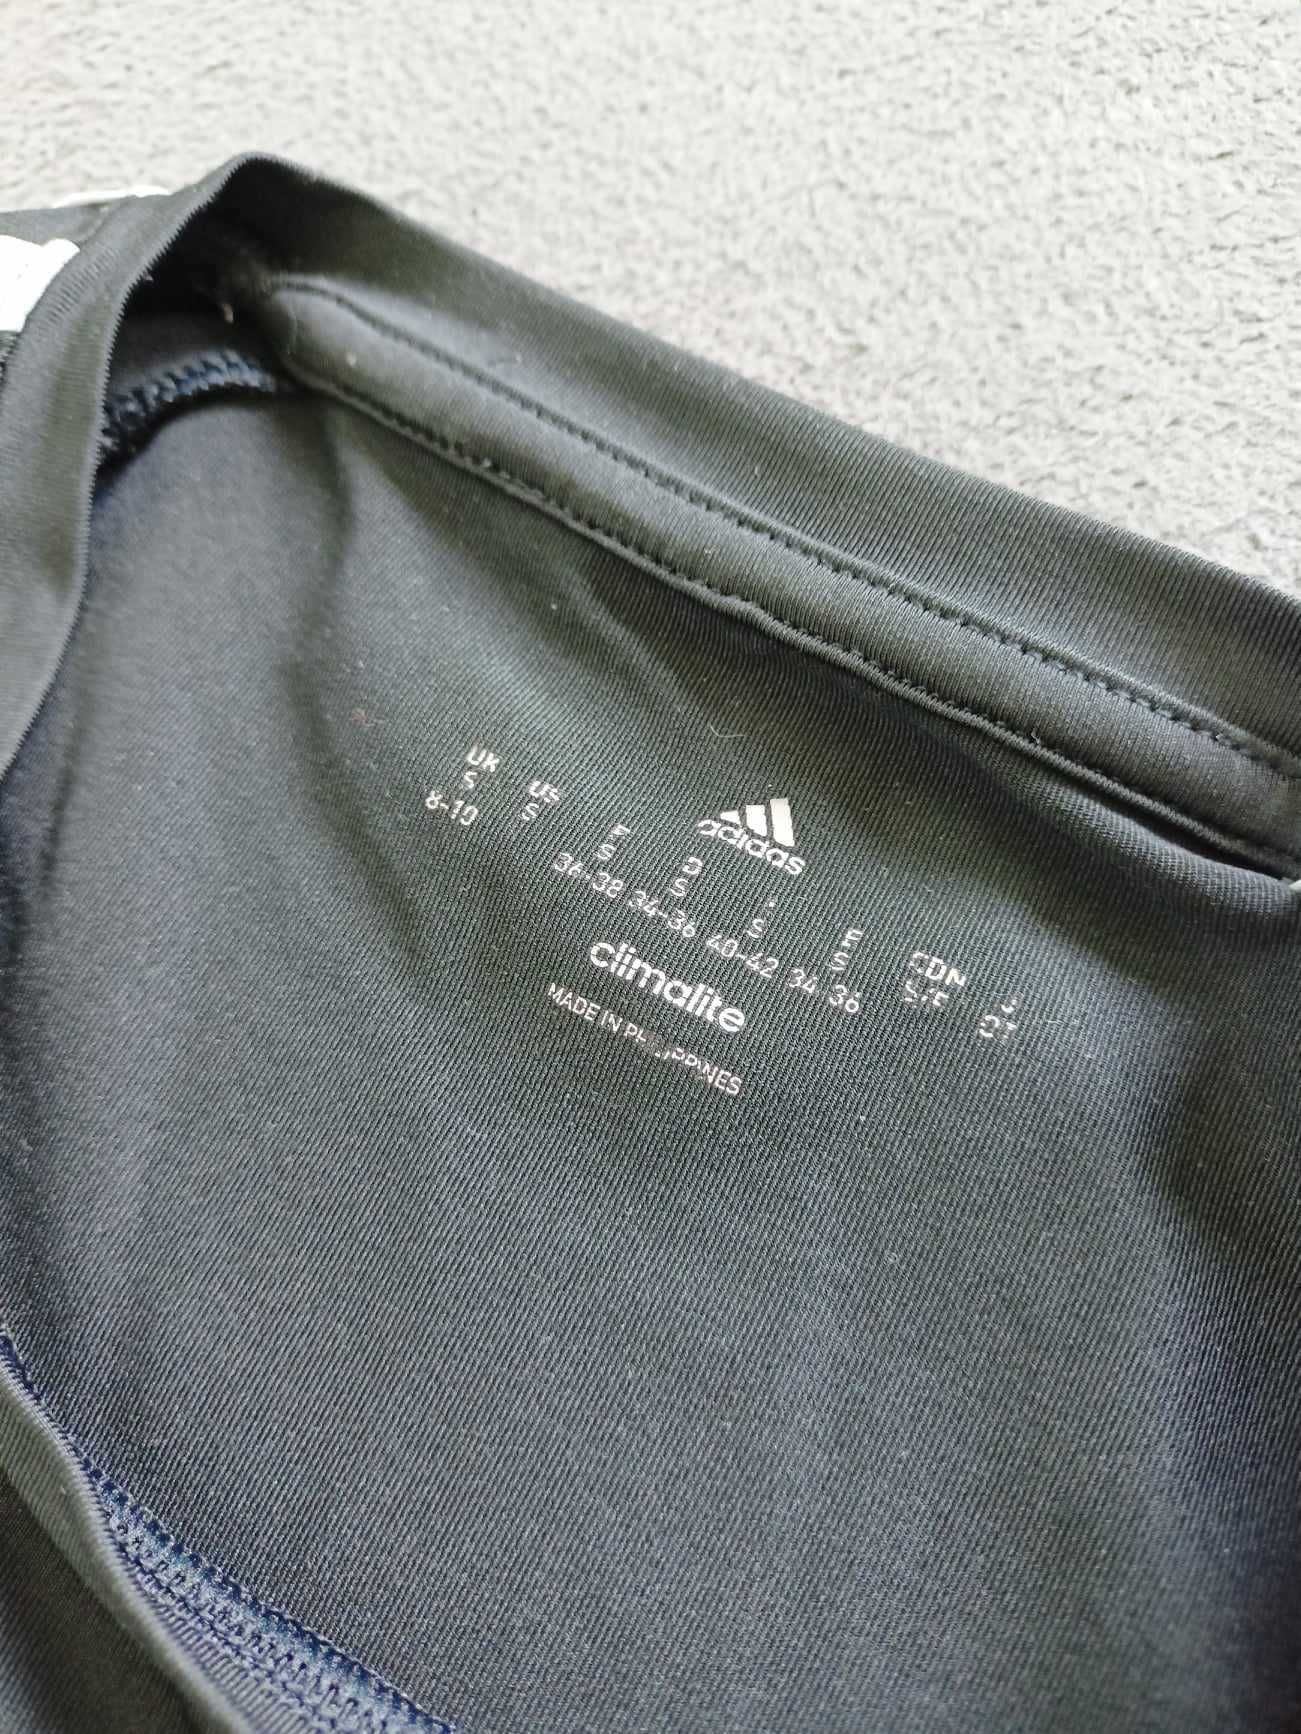 Damski t-shirt/koszulka treningowa Adidas Climalite, czarna, rozmiar S